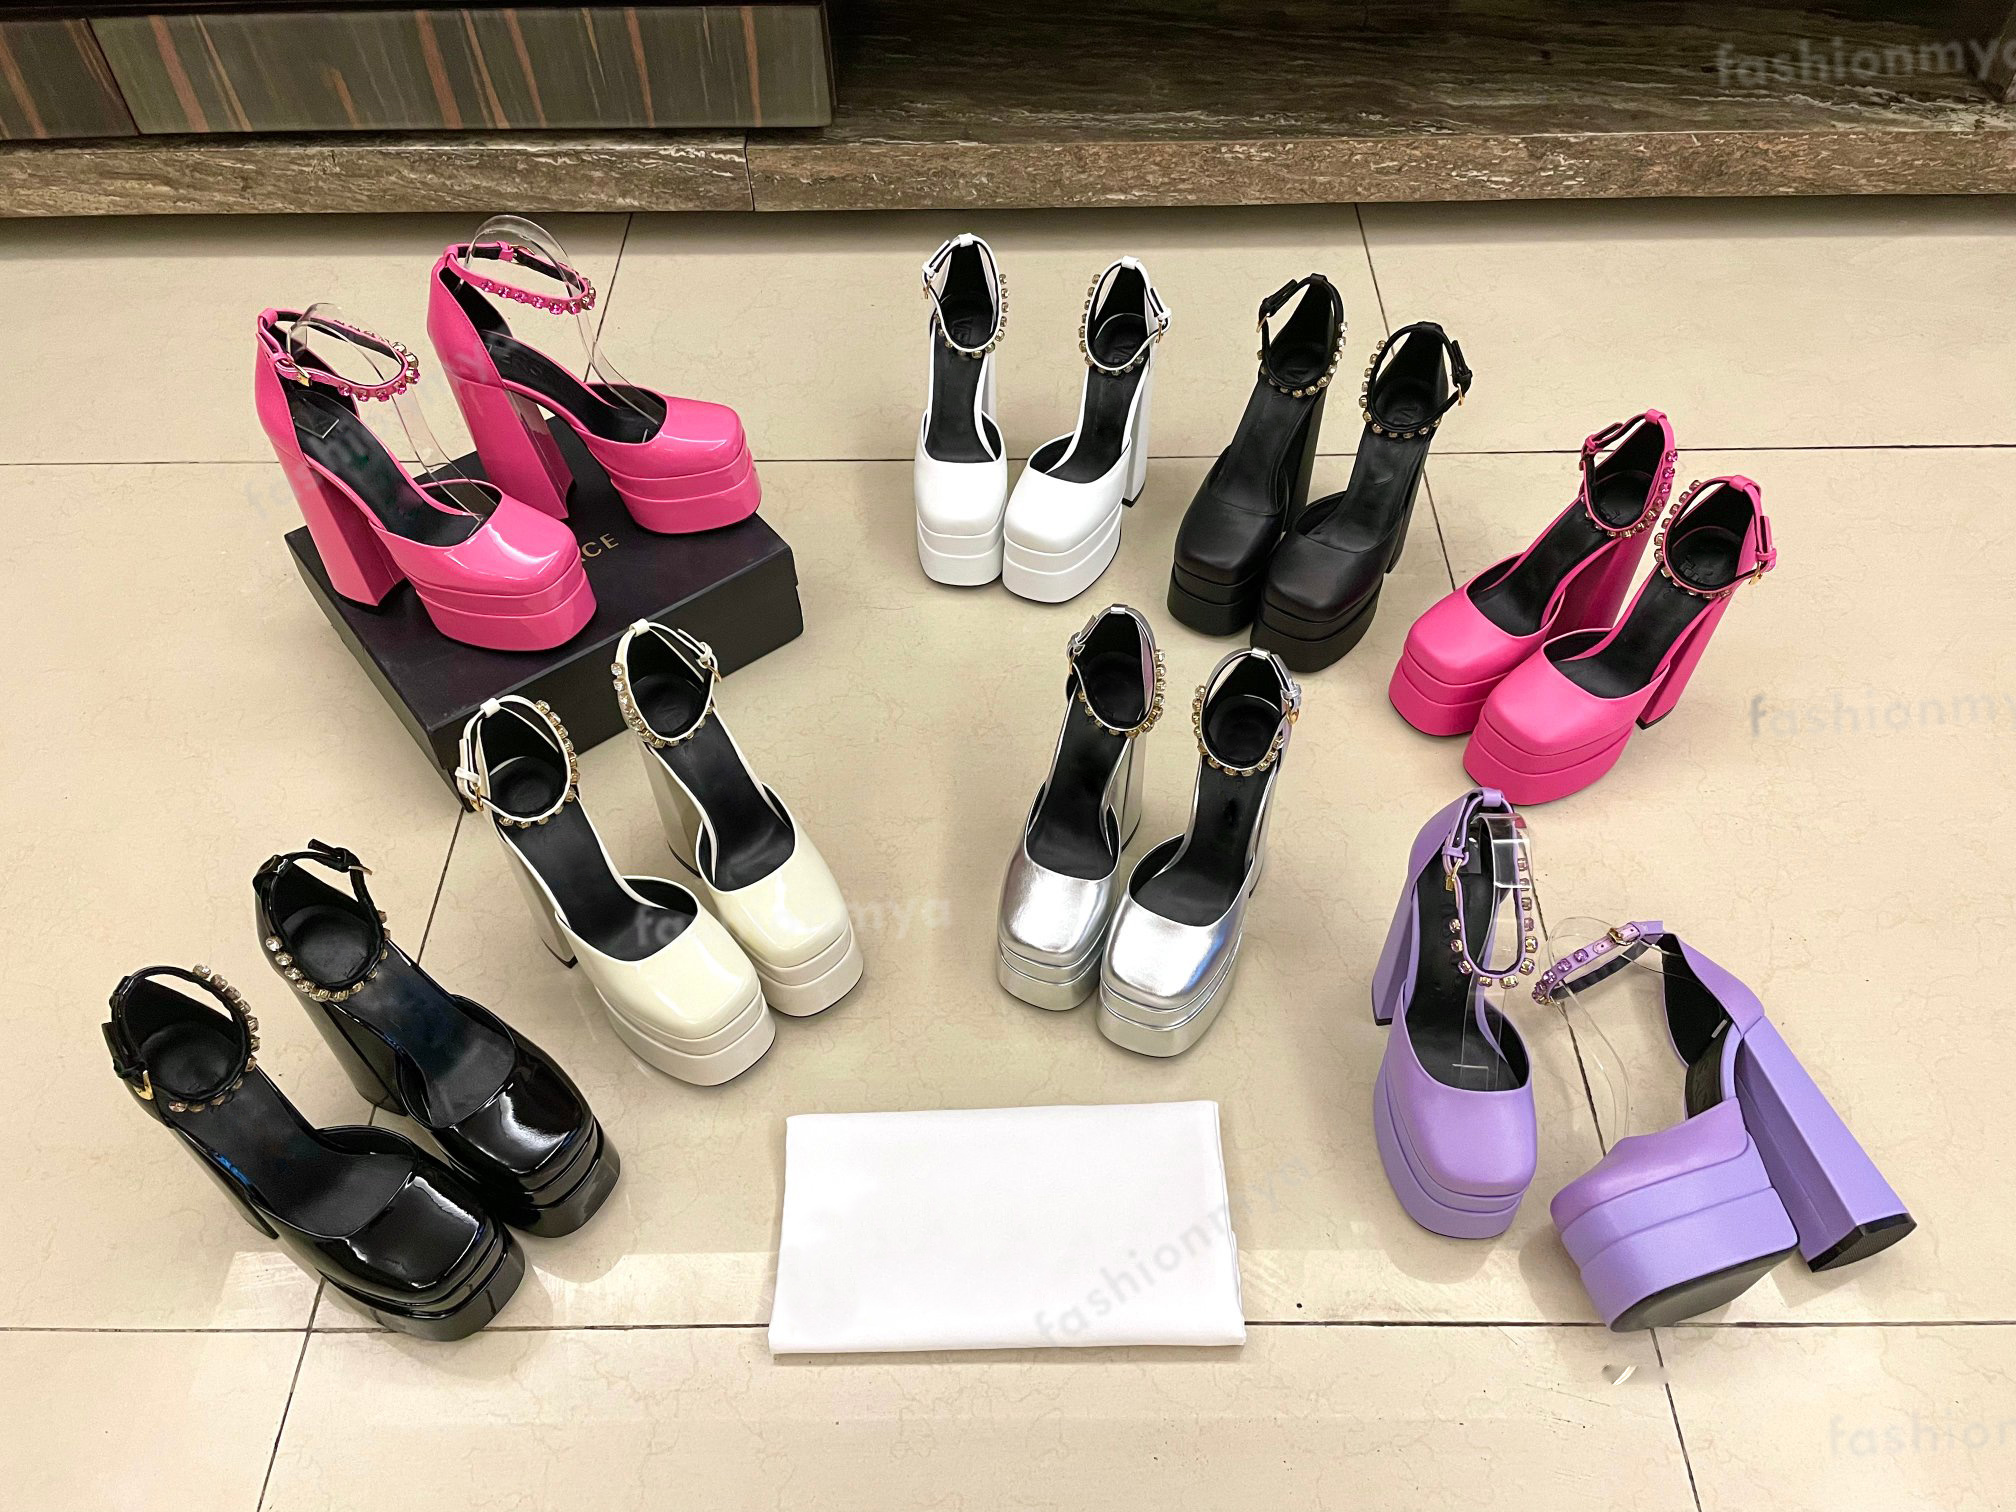 

Designer Sandals Womens Sandal Aevitas Shoe Crystal Embellished Ankle Strap Satin Platform Pumps Shoes Chunky Heeled Women Sandals, 14